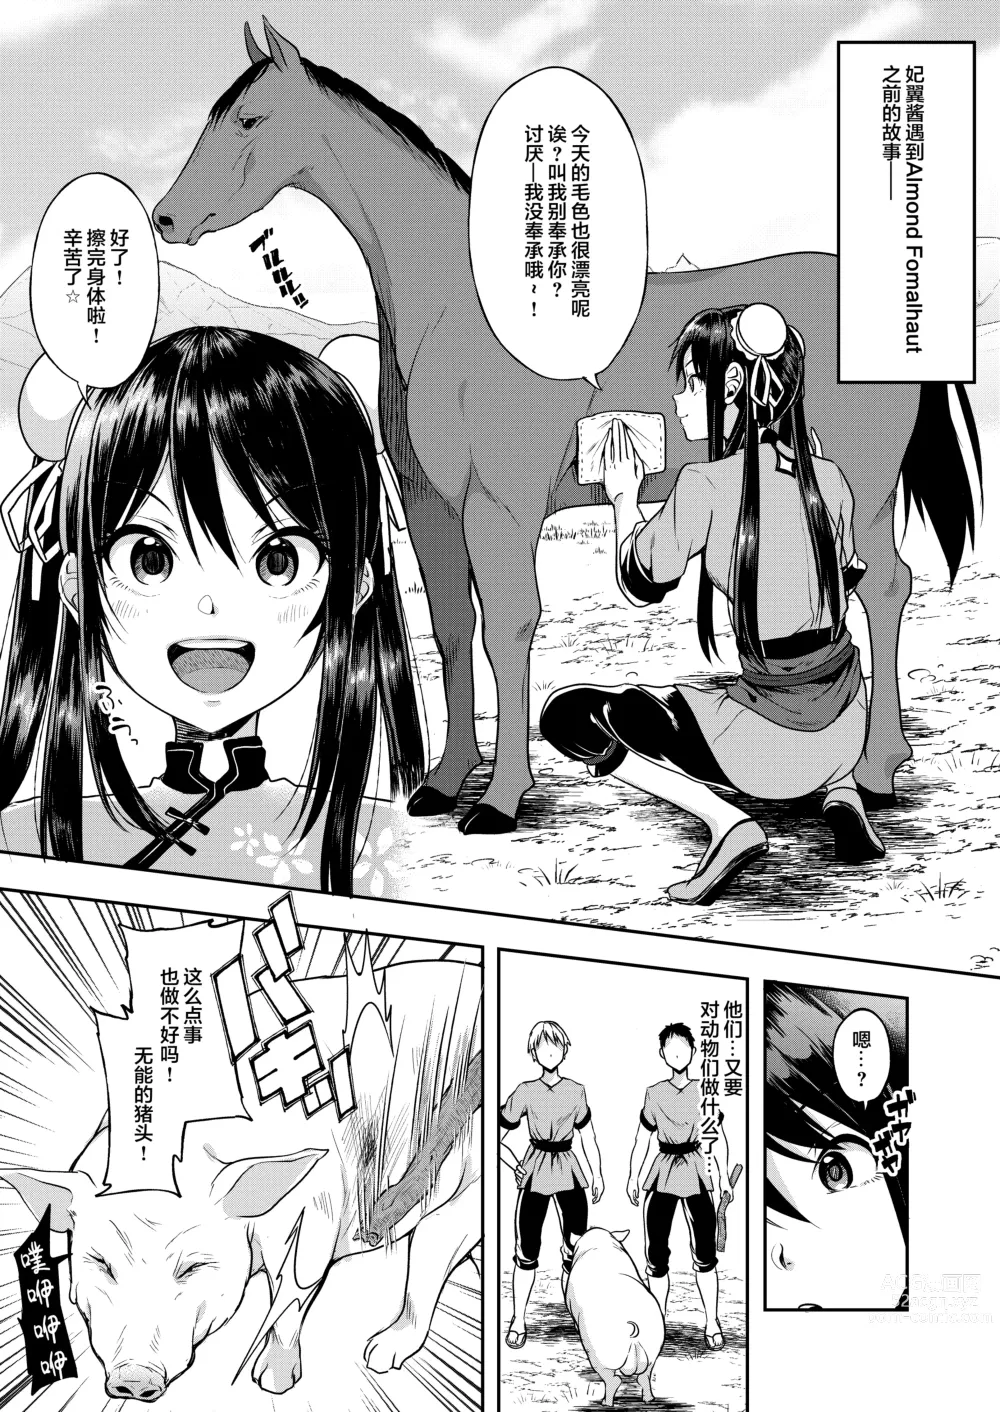 Page 2 of doujinshi Faye-chan ga Dekiru made